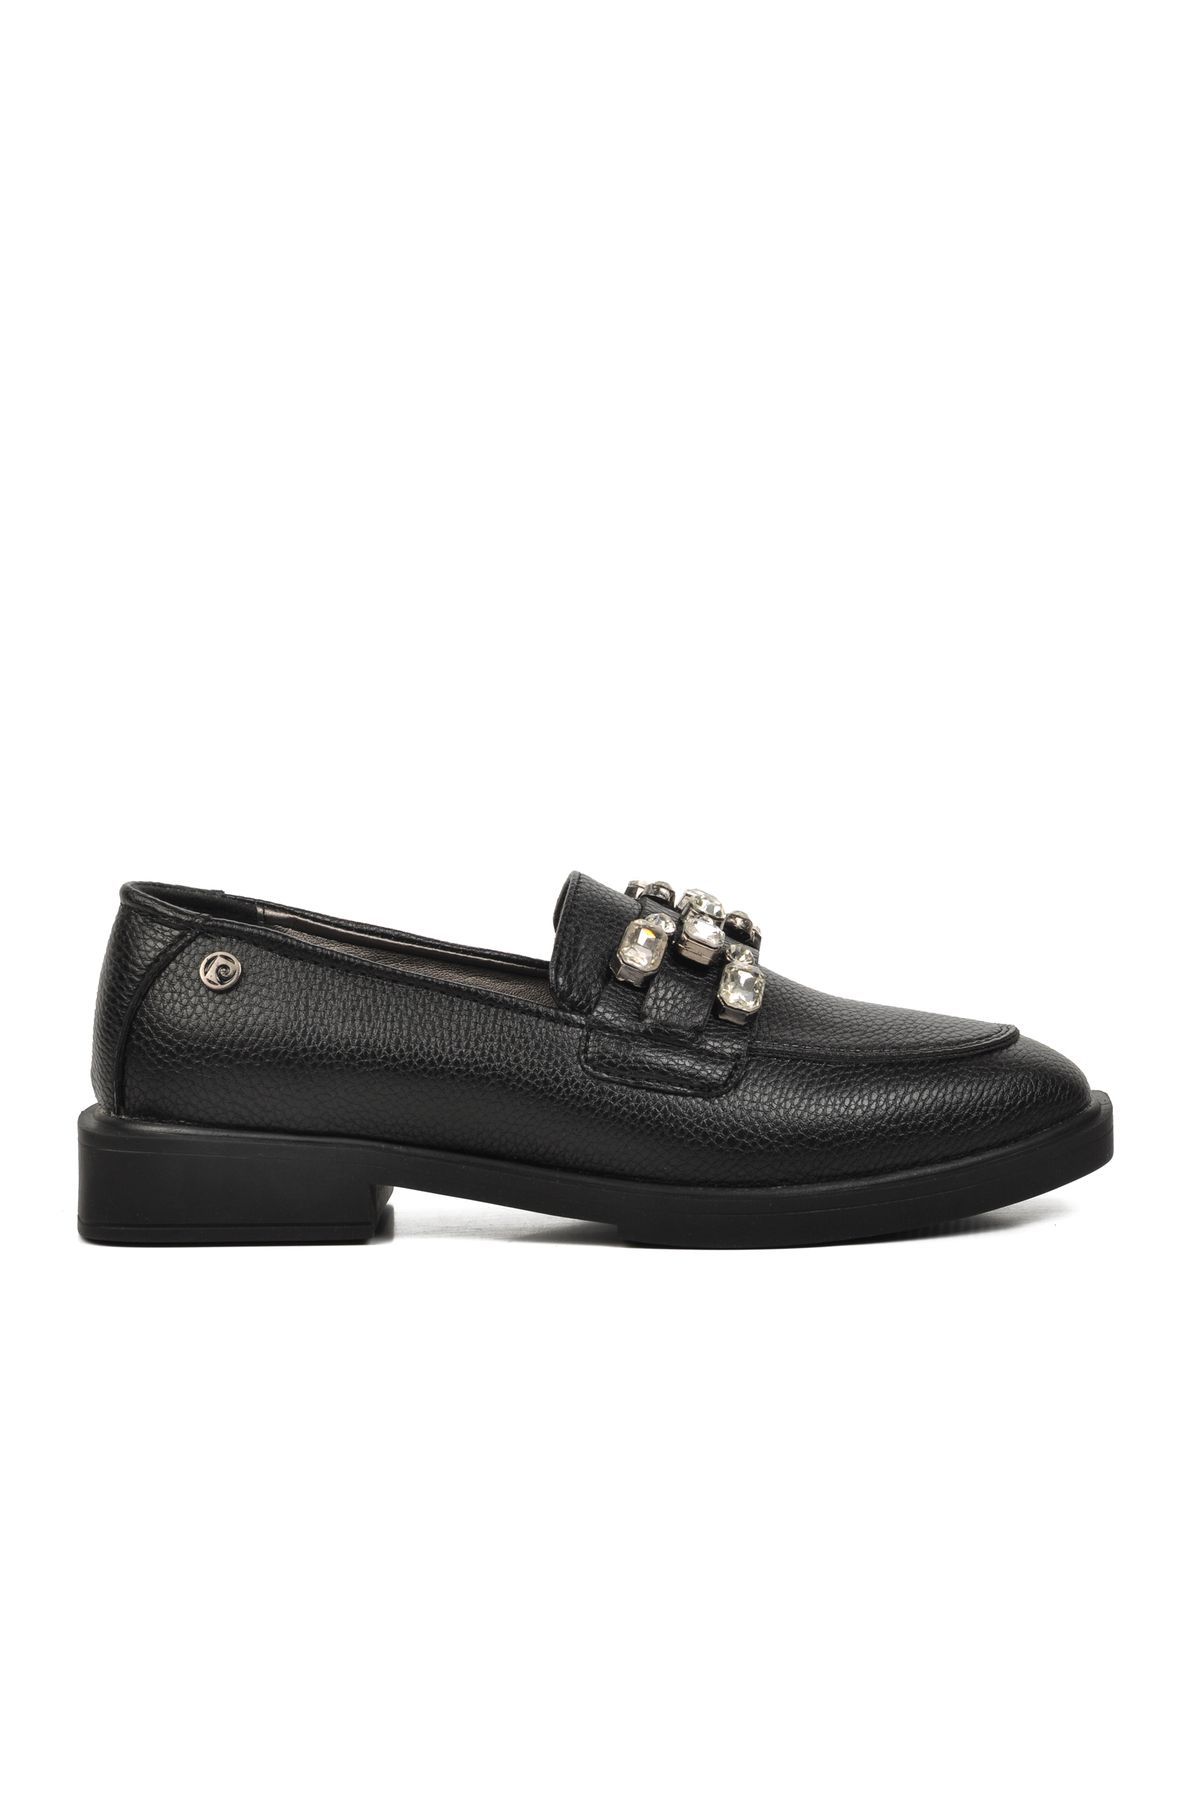 Pierre Cardin Siyah Floter Kadın Taşlı Loafer Ayakkabı